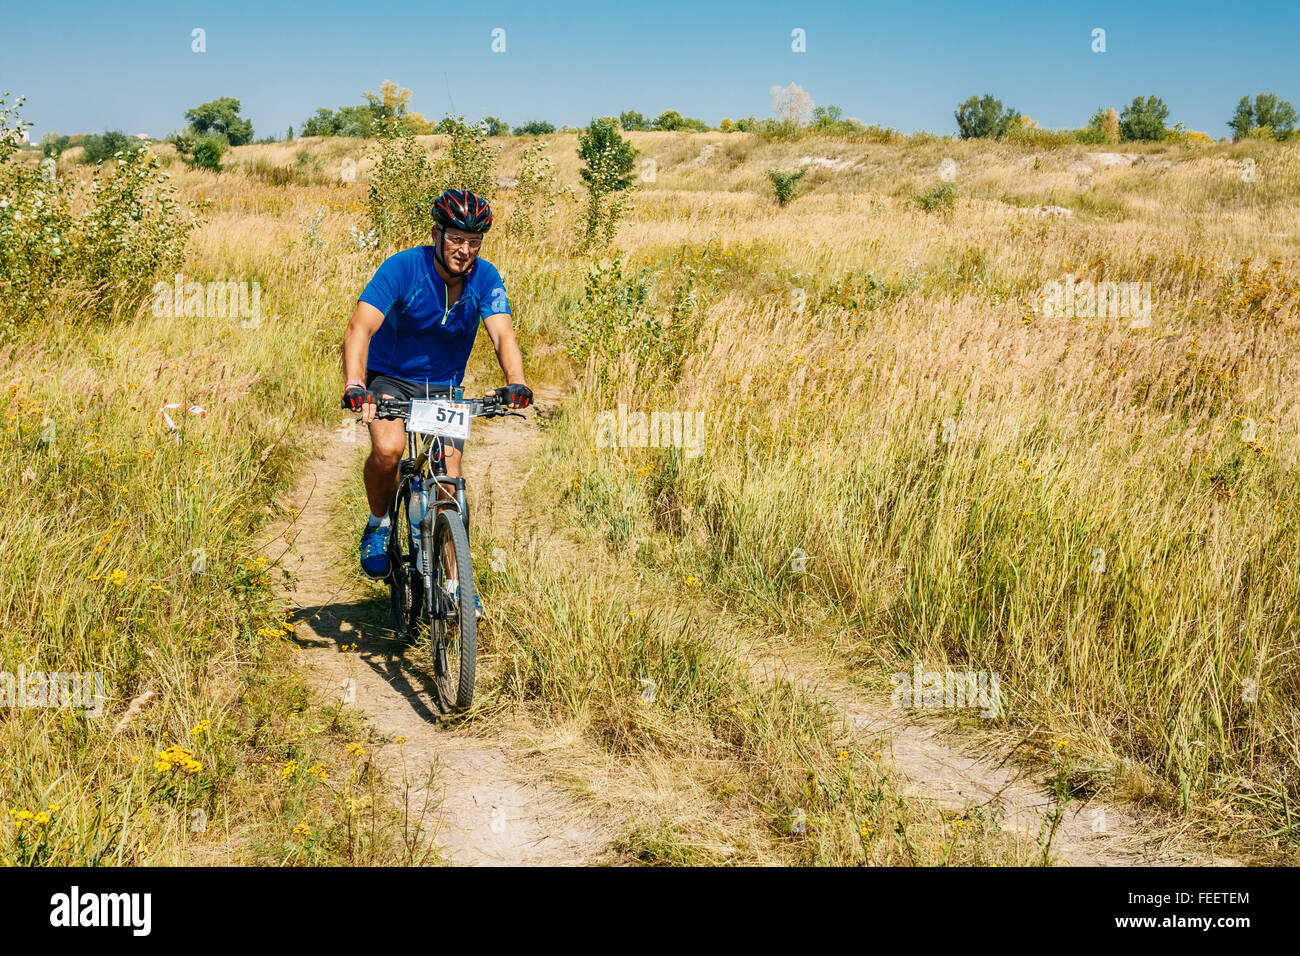 Mountain Bike Radfahrer Mann Reiten Track auf gelbe Wiese am sonnigen Tag. Aktiver Sport, gesunde Lebensweise, Wettbewerb zu üben. Stockfoto